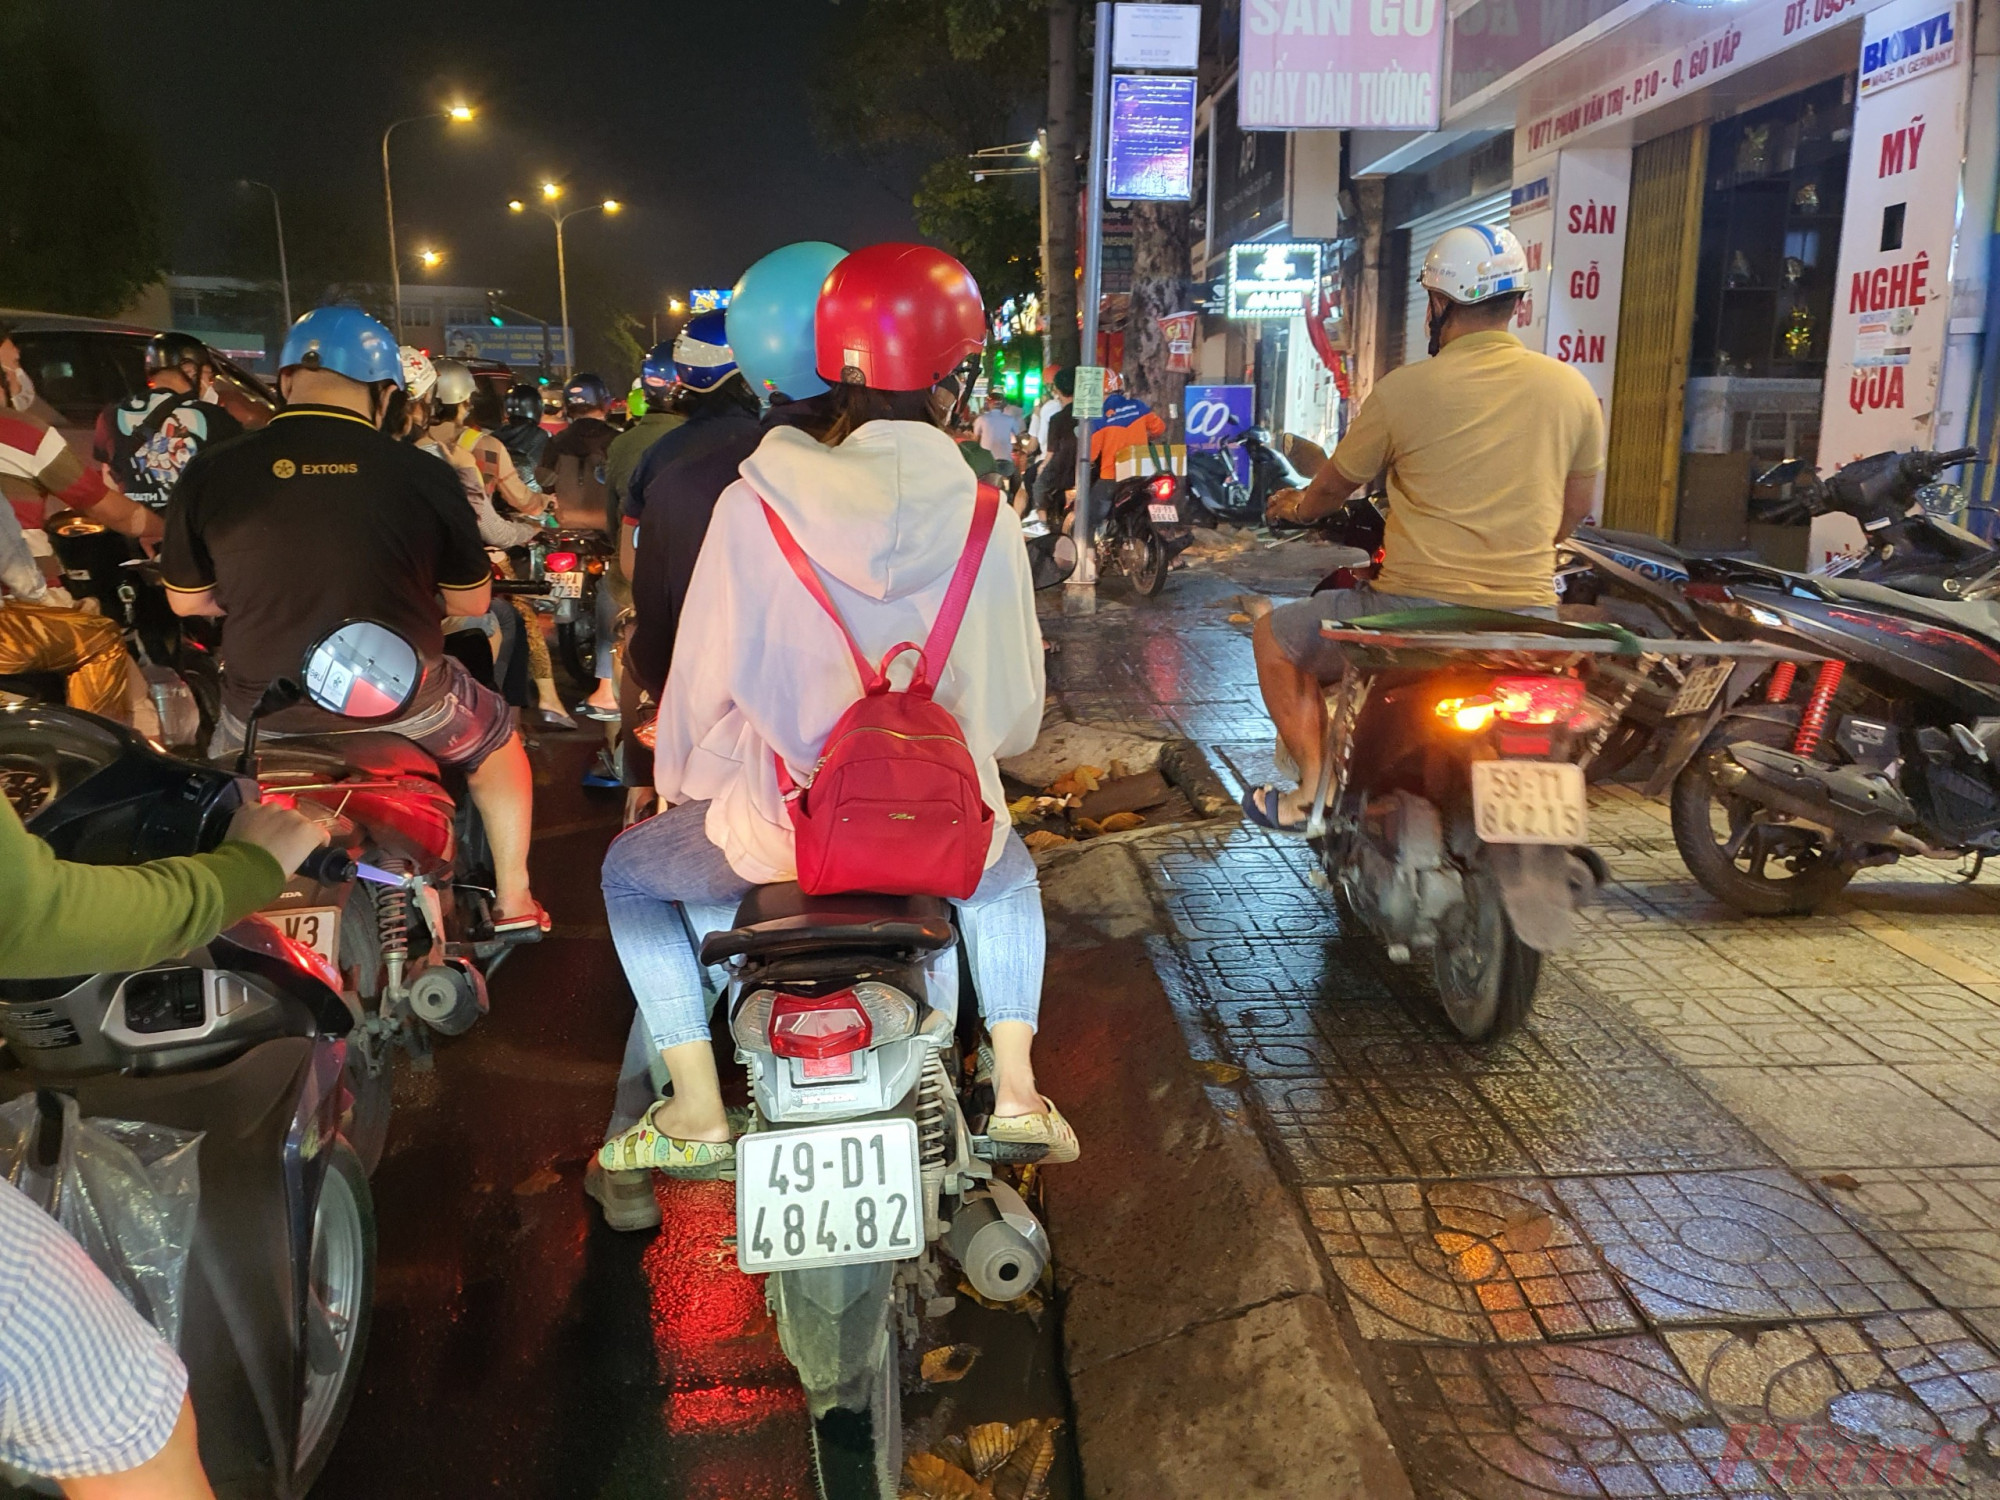 Không chỉ tại Phố đi bộ Nguyễn Huệ, lượng xe cộ đổ dồn về các khu vực trung tâm khiến tình trạng ùn ứ kéo dài. Nhiều người dân tỏ ra mệt mỏi khi phải chờ đời, người thì quay đầu, đi lên vỉa hè tìm cách thoát khiến tình trạng giao thông ngày càng hỗn loạn.